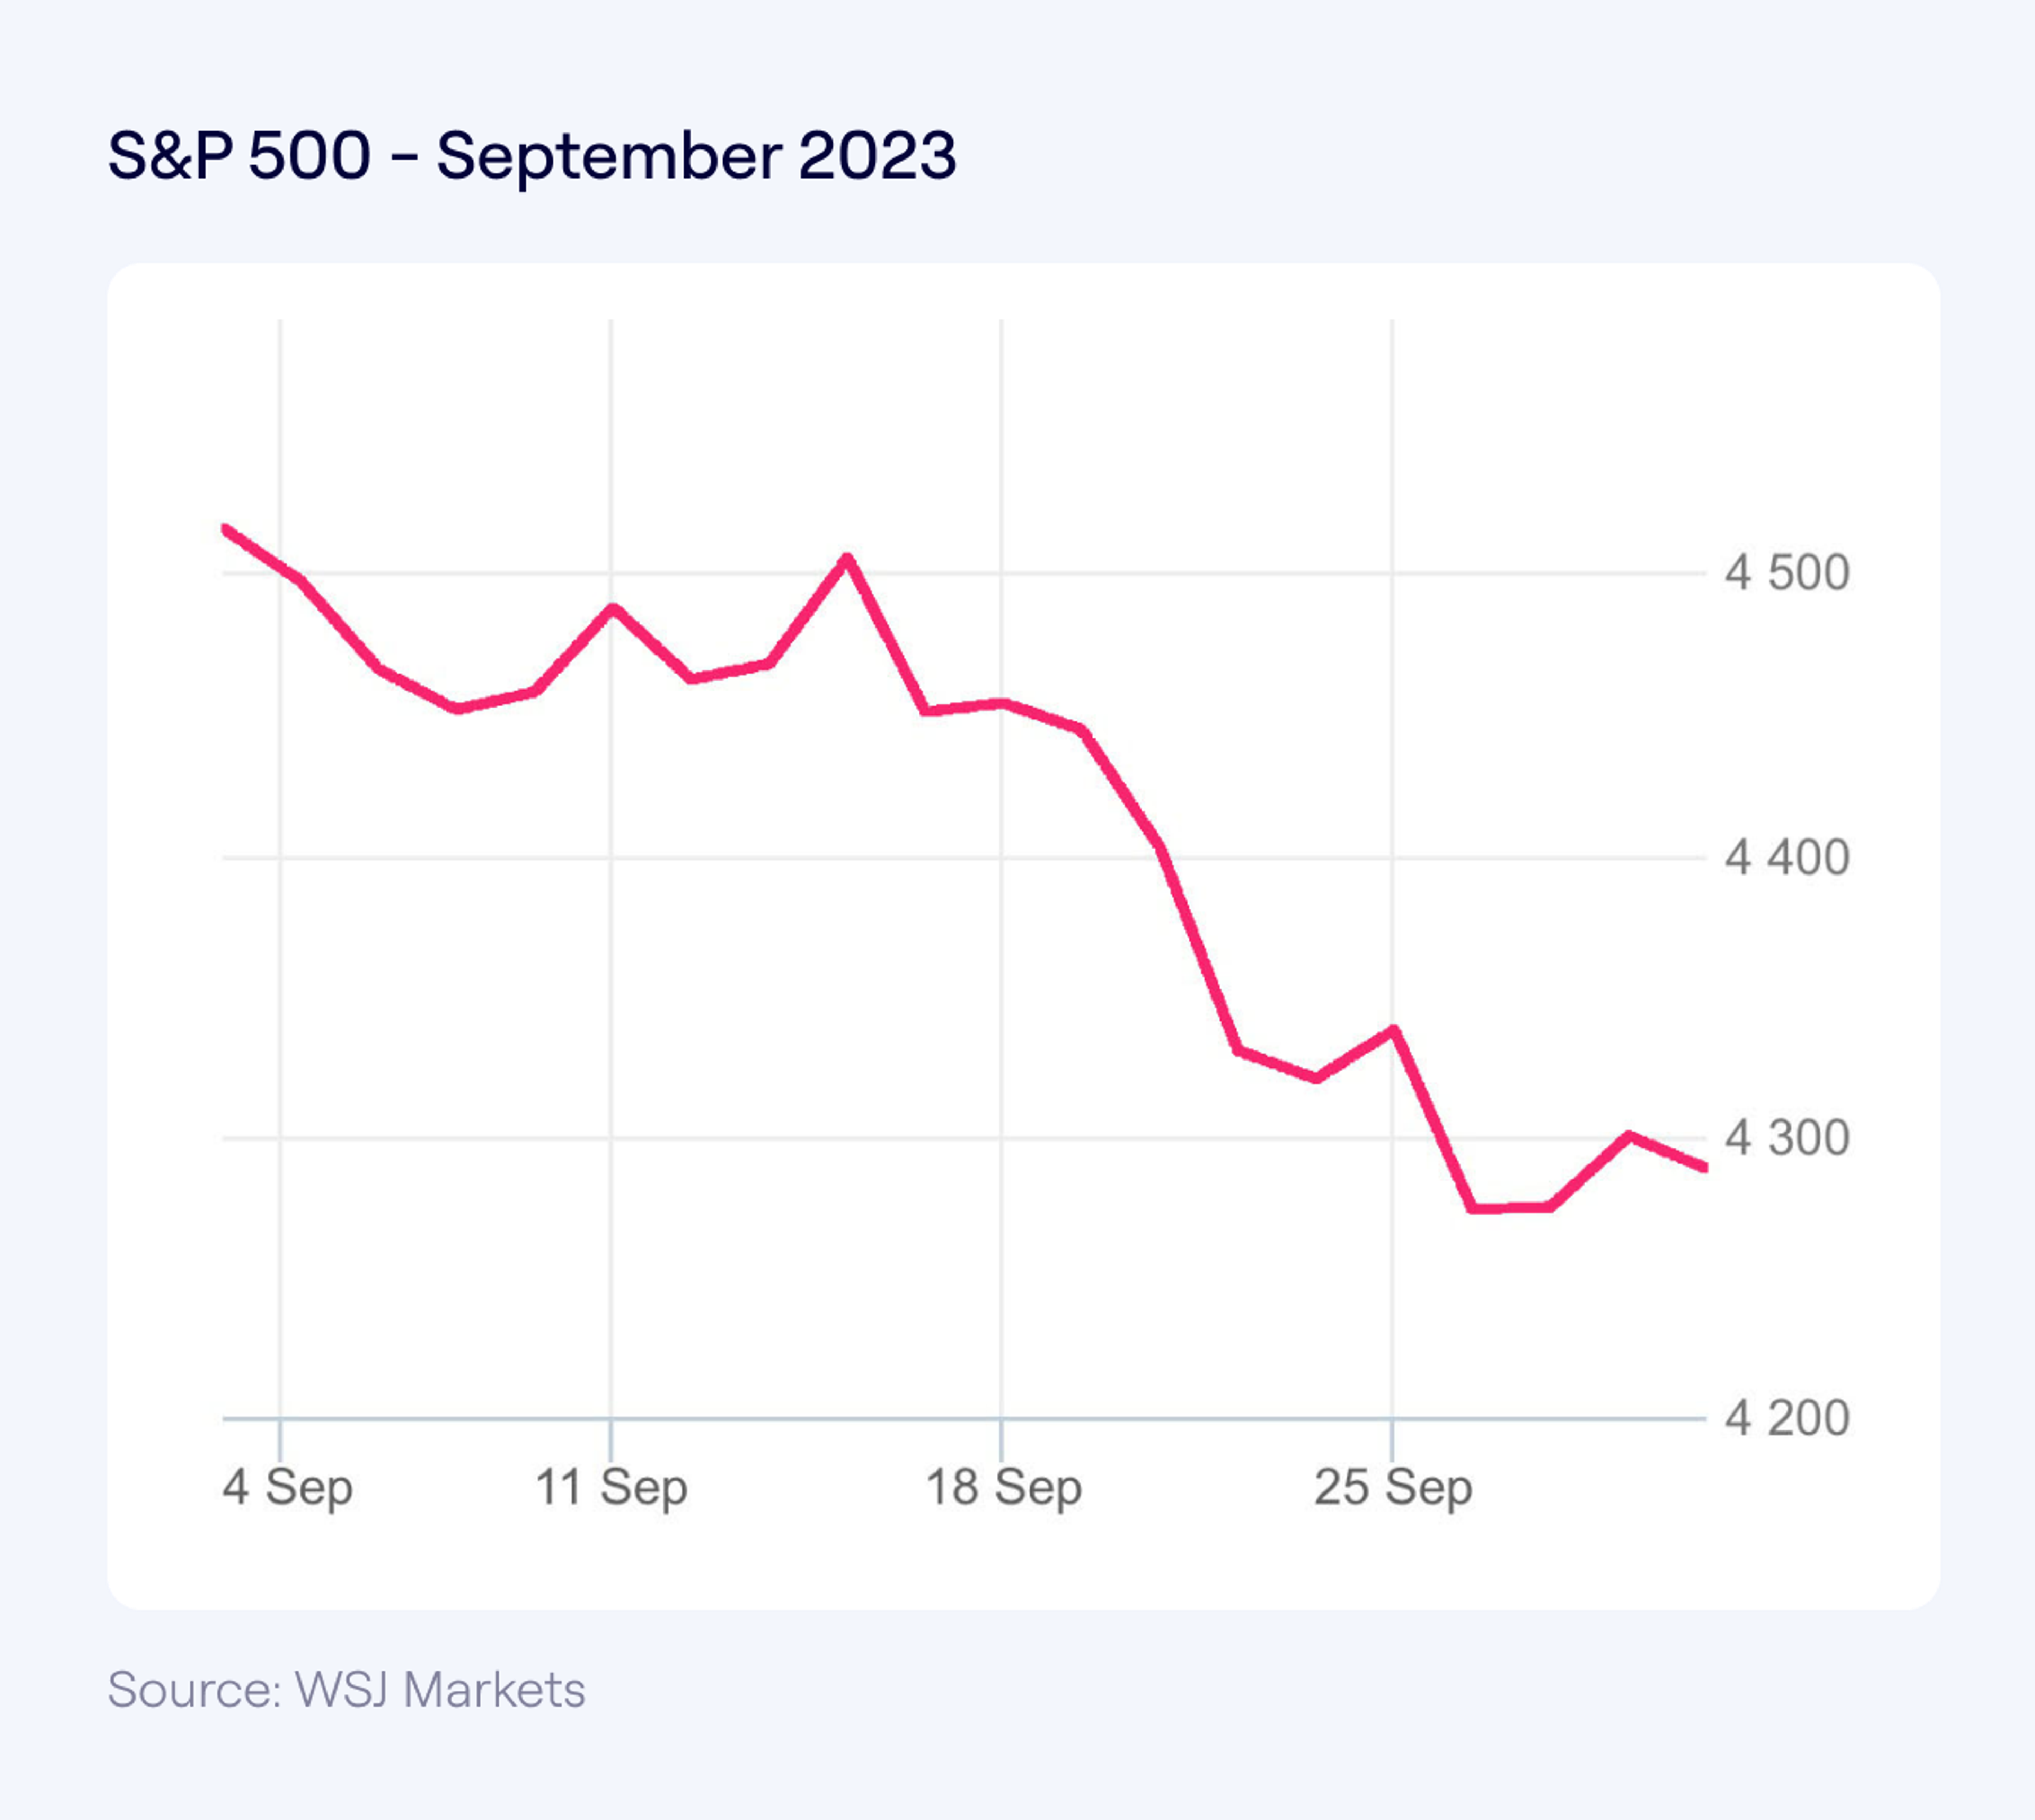 S&P500 September 2023